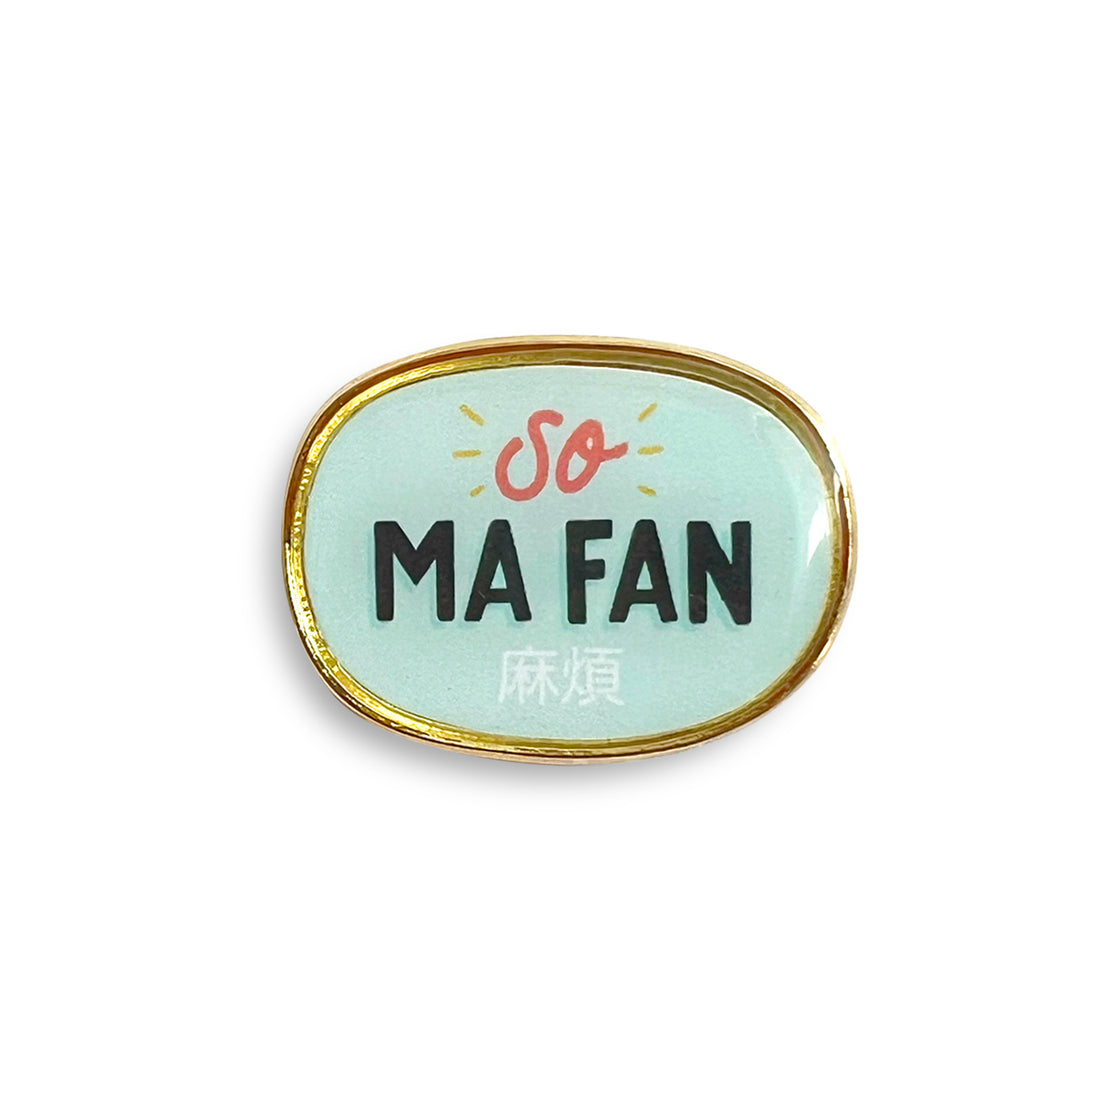 So ma fan (麻煩) lapel pin by I&